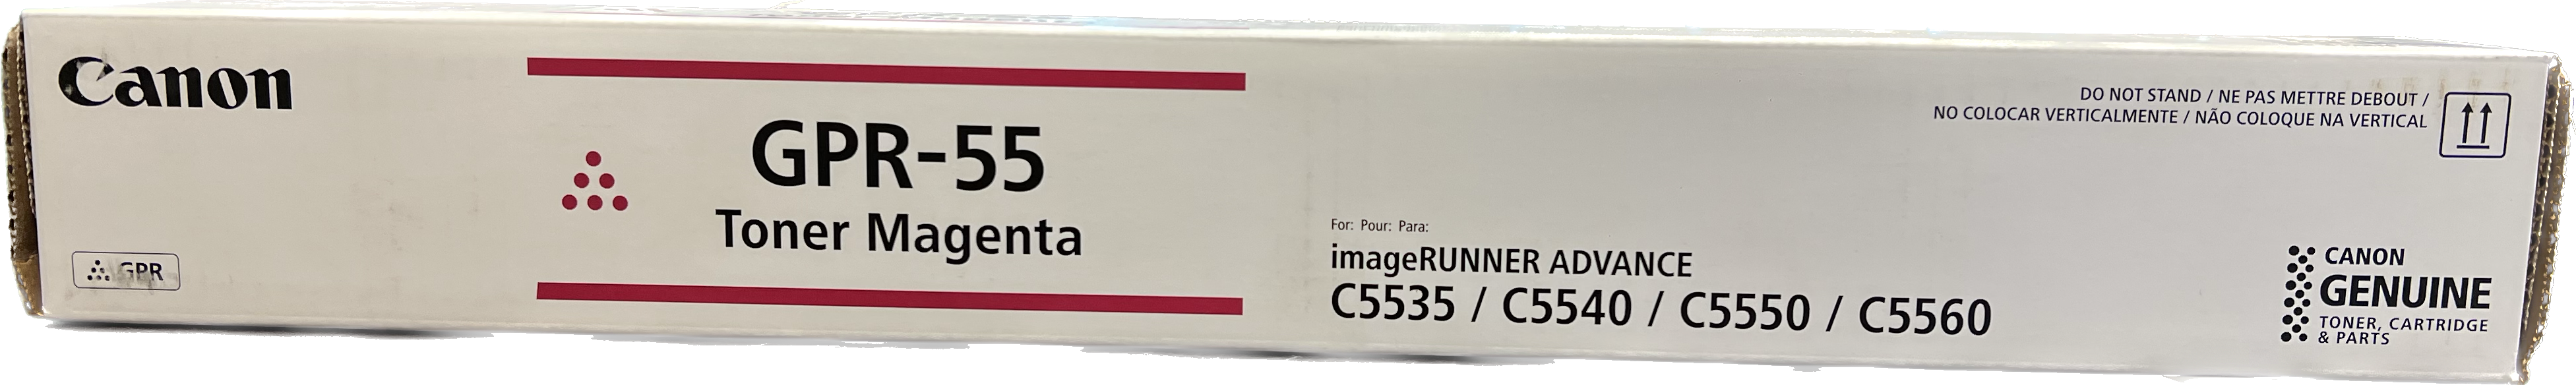 Genuine Canon Magenta Toner Cartridge | 0483C003 | GPR-55M